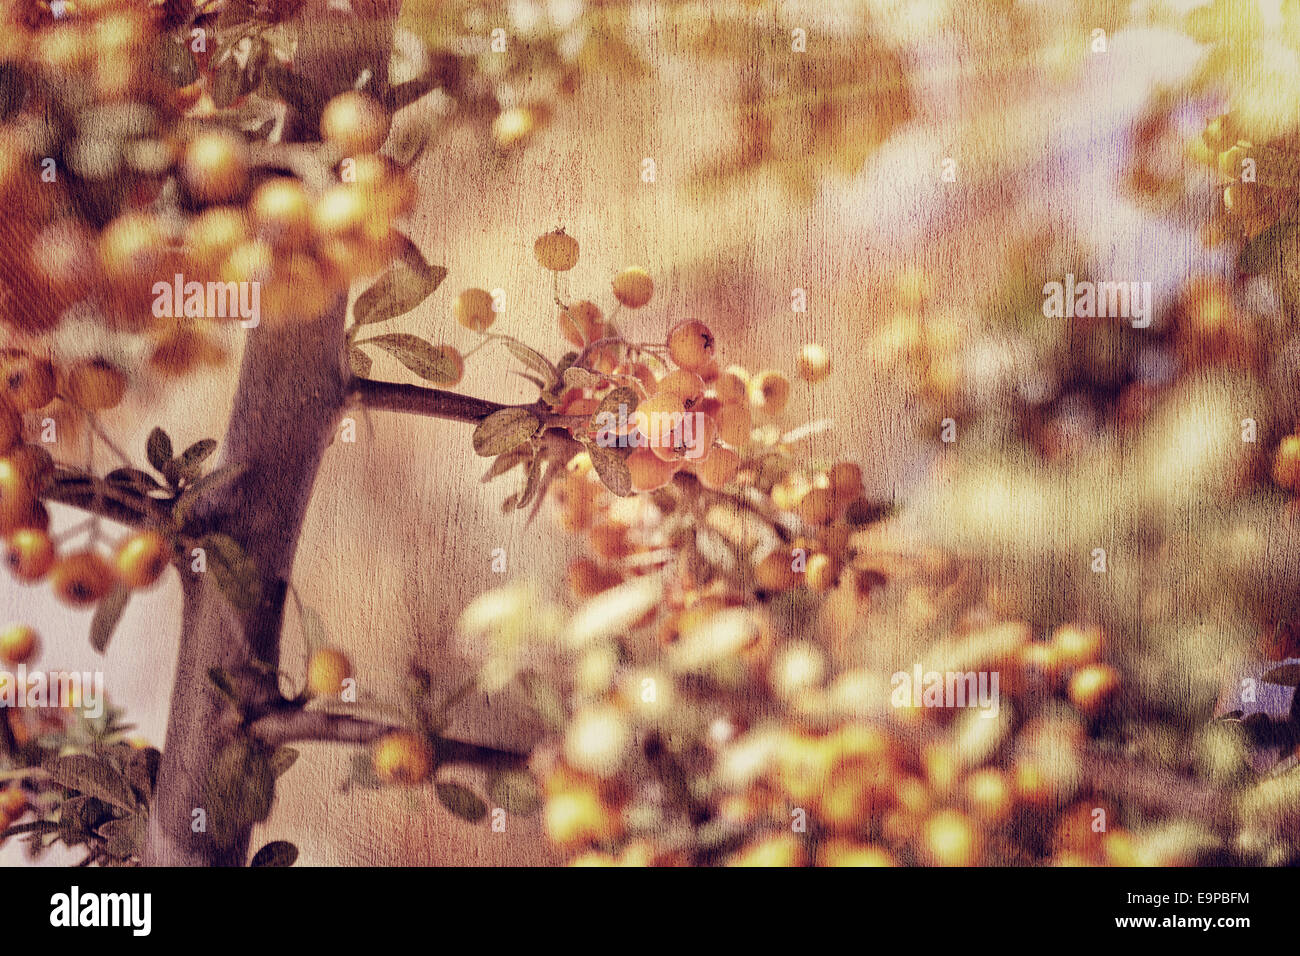 Vogelbeere Hintergrund, Grunge Stil Foto schöne kleine orangefarbene Beere Haufen, hellen Sonnenstrahlen, Herbsternte Saison Konzept Stockfoto